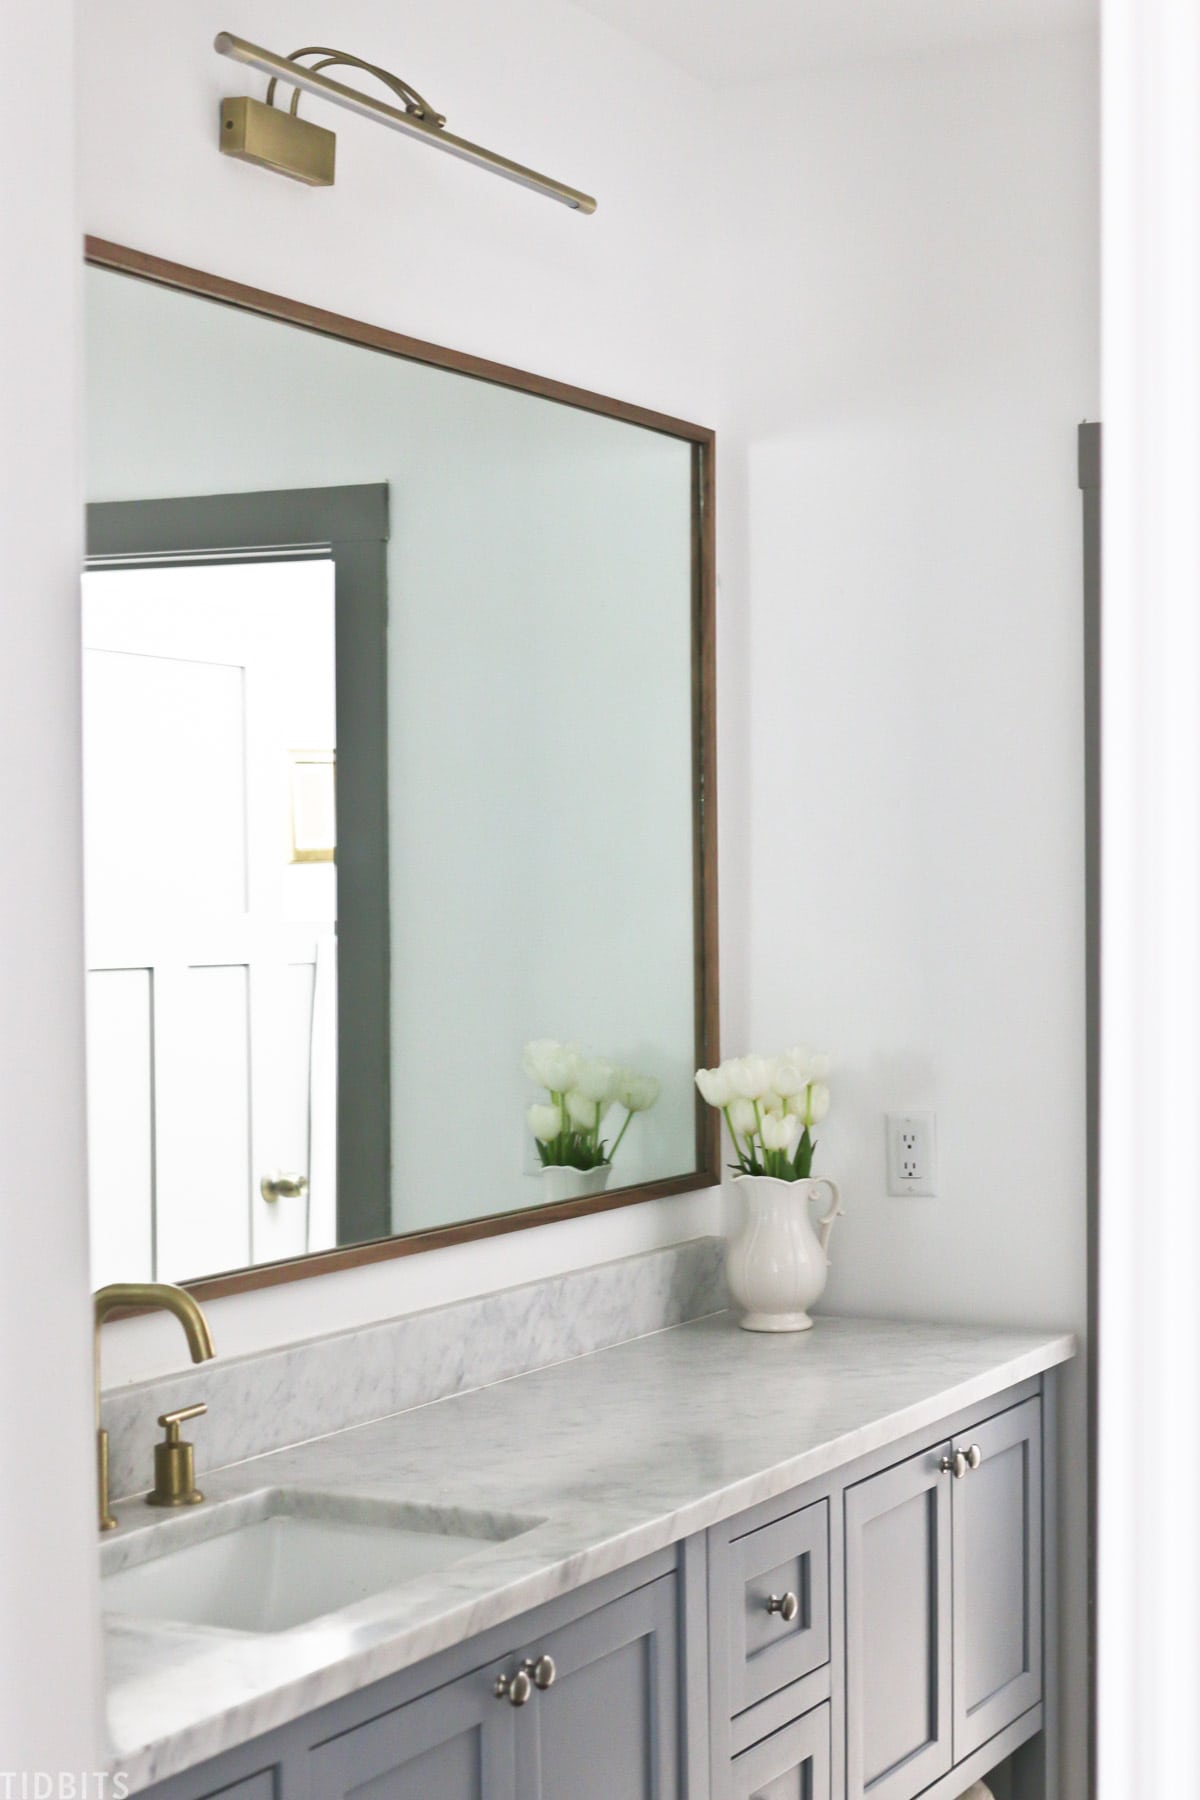 Diy Wood Mirror Frame For Bathroom, Wood Framed Mirror Diy